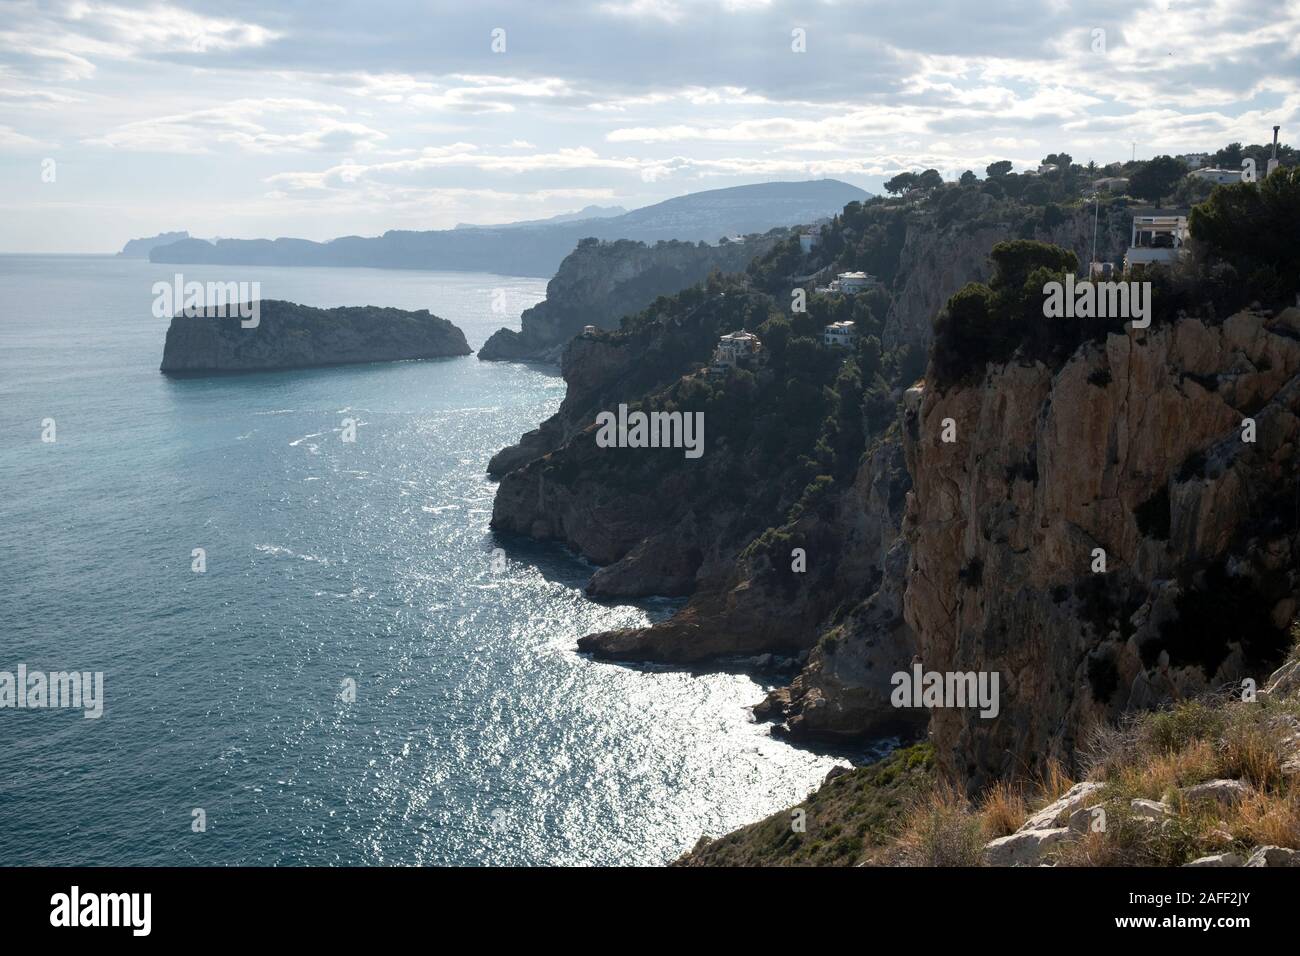 Mediterranean coastline of Jávea with steep cliffs, seaside villas and Descubridor islet from Cabo de la Nao (Xàbia, Marina Alta, Alicante, Spain) Stock Photo